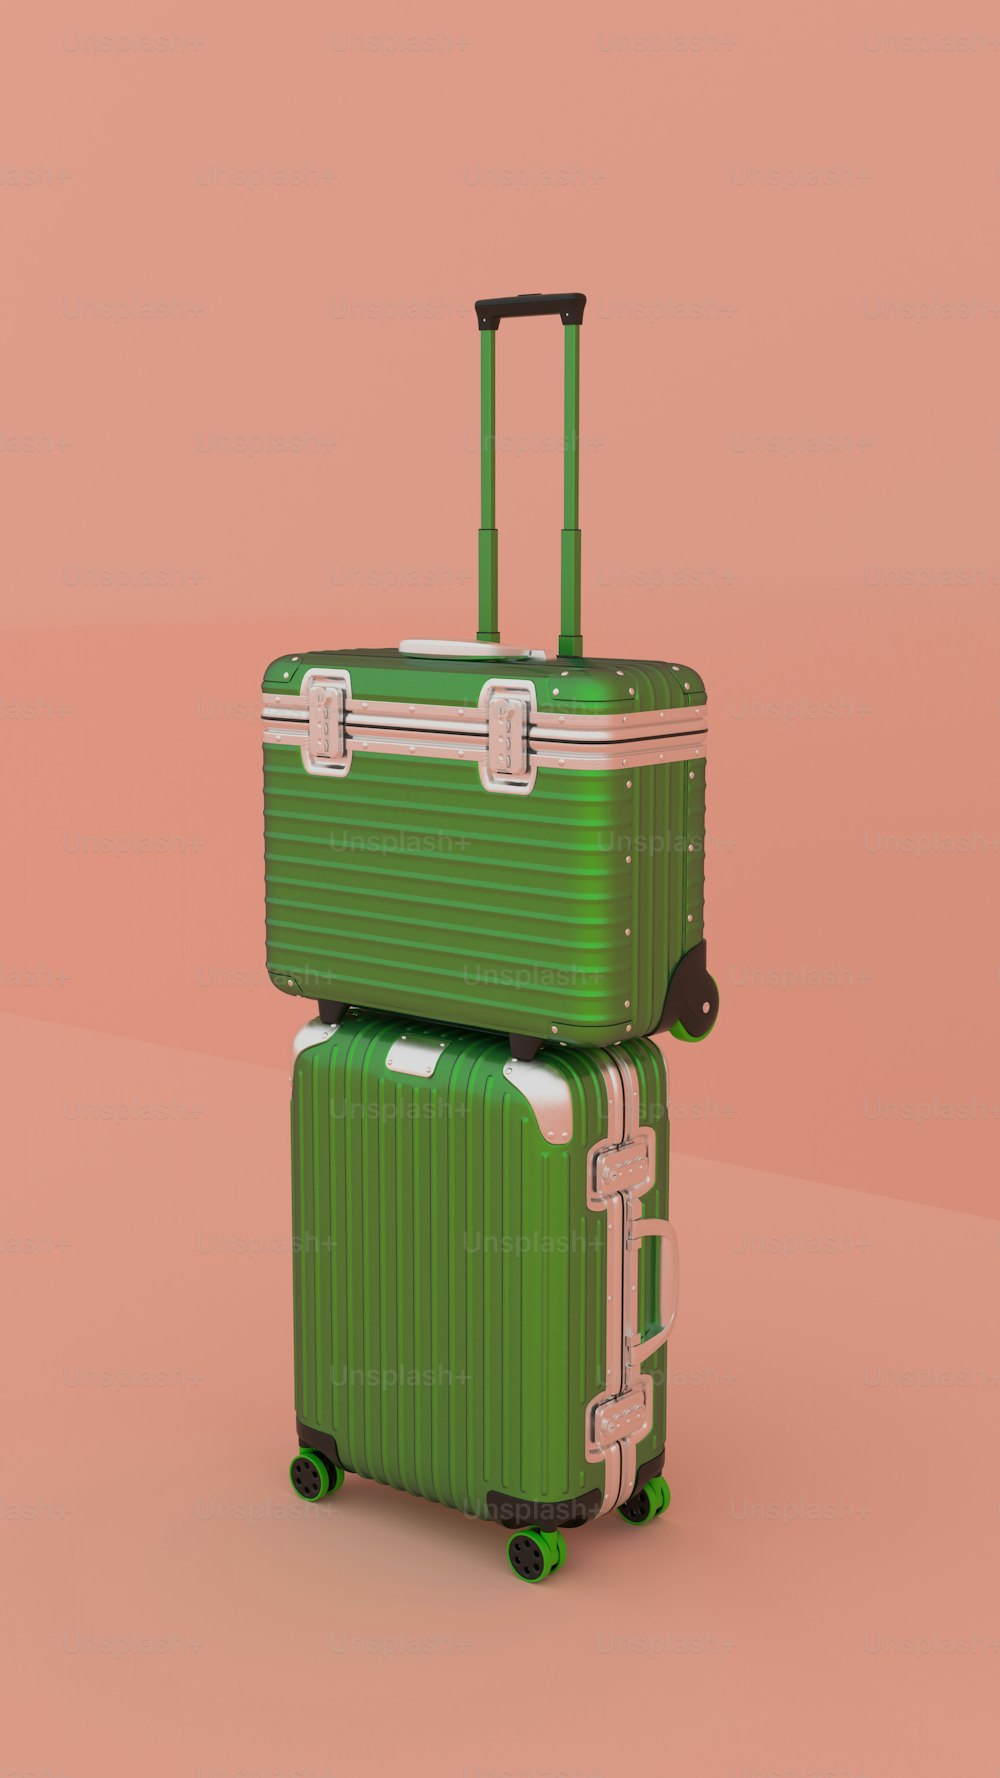 2つの緑色のスーツケースを重ねて